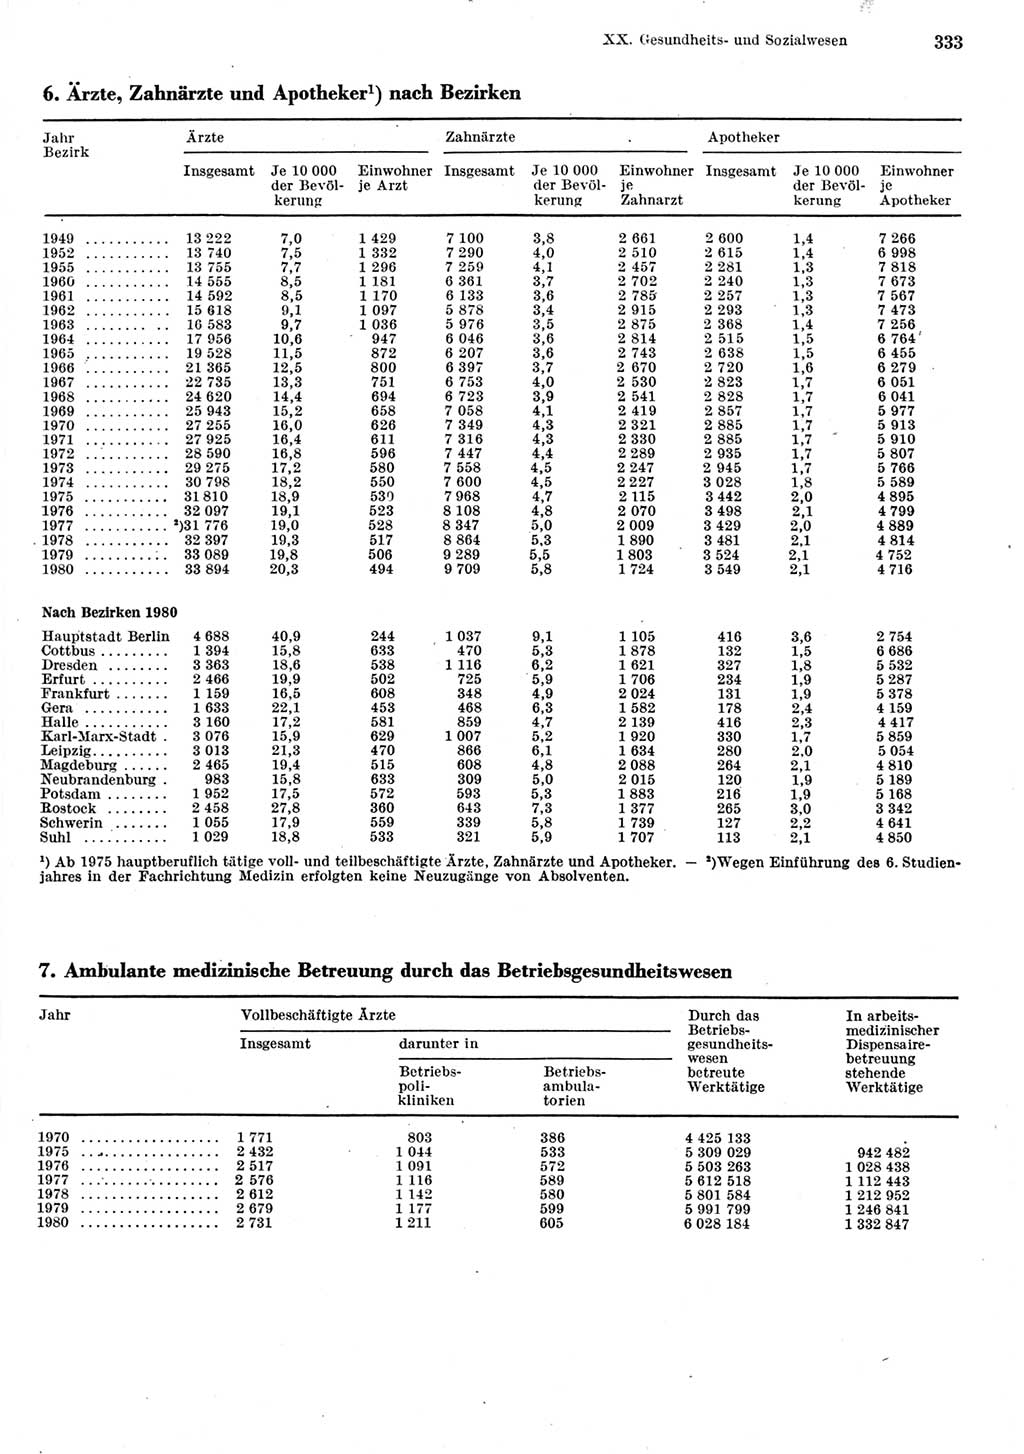 Statistisches Jahrbuch der Deutschen Demokratischen Republik (DDR) 1981, Seite 333 (Stat. Jb. DDR 1981, S. 333)